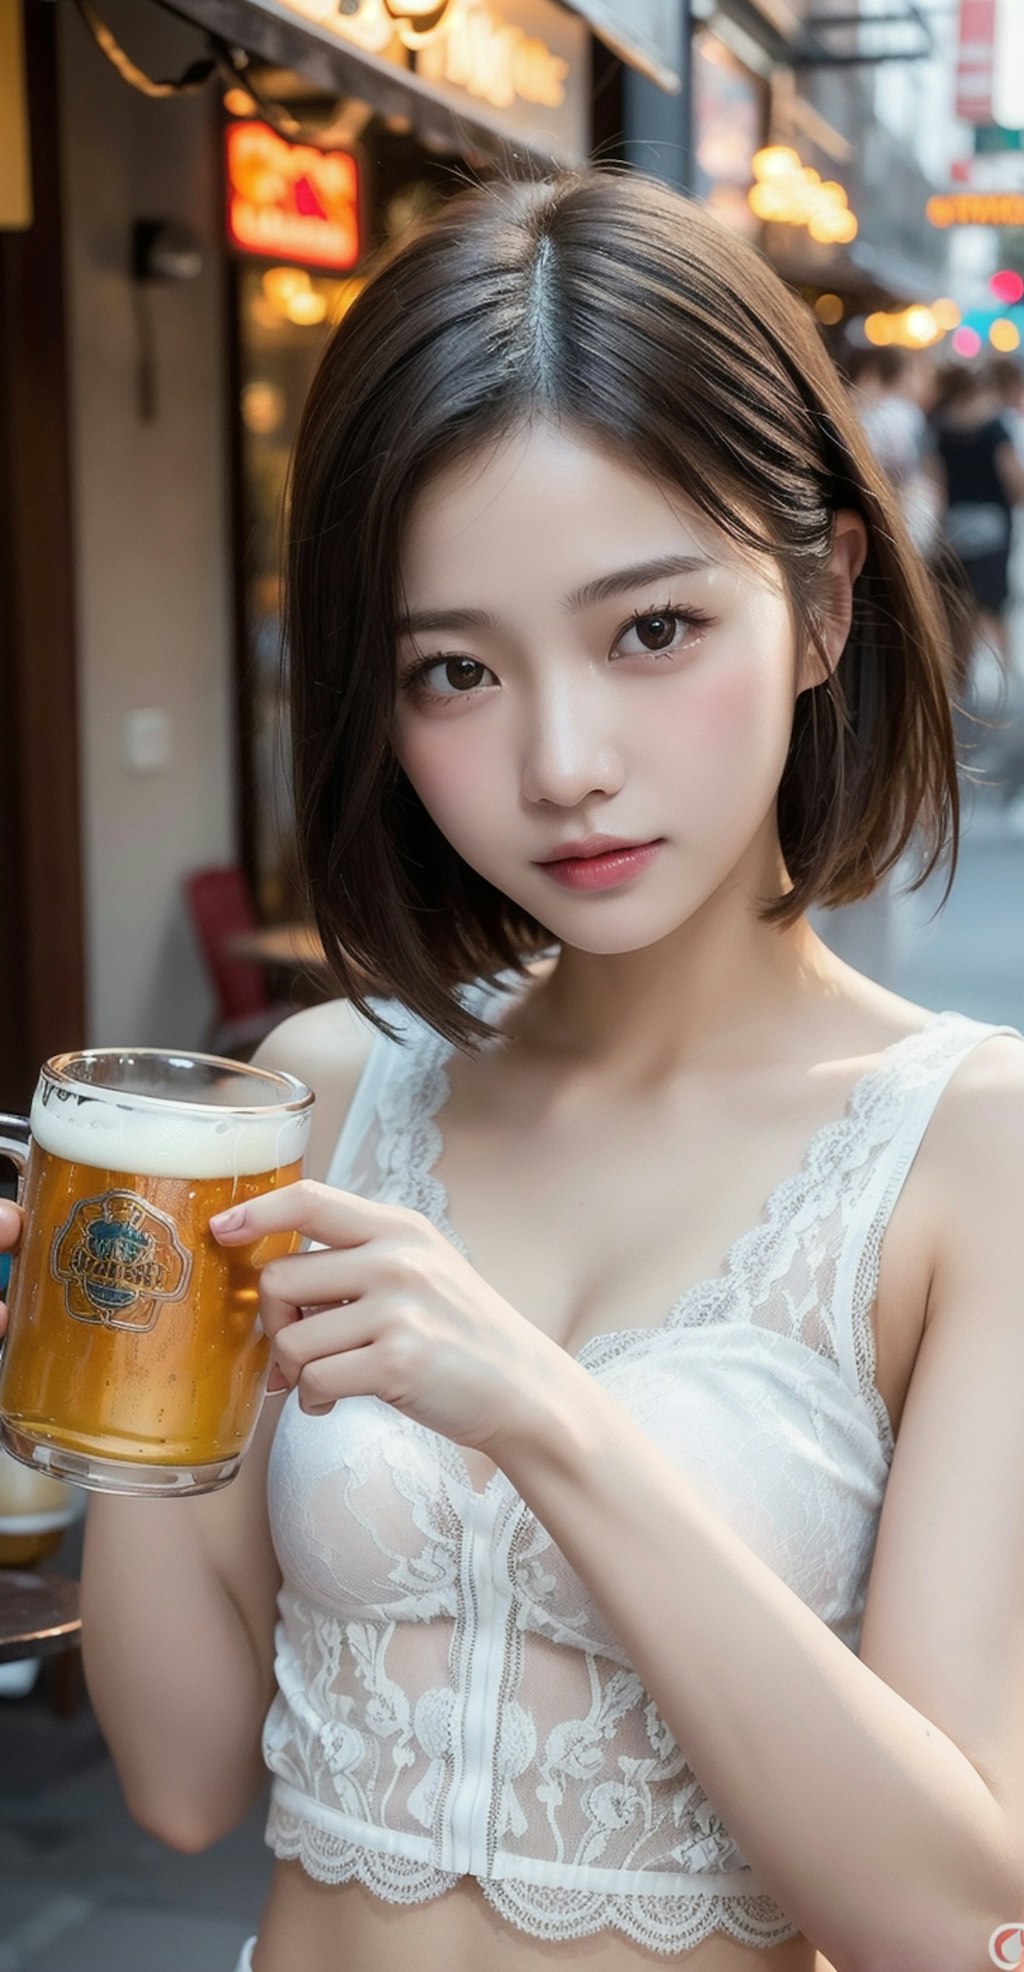 ビール60